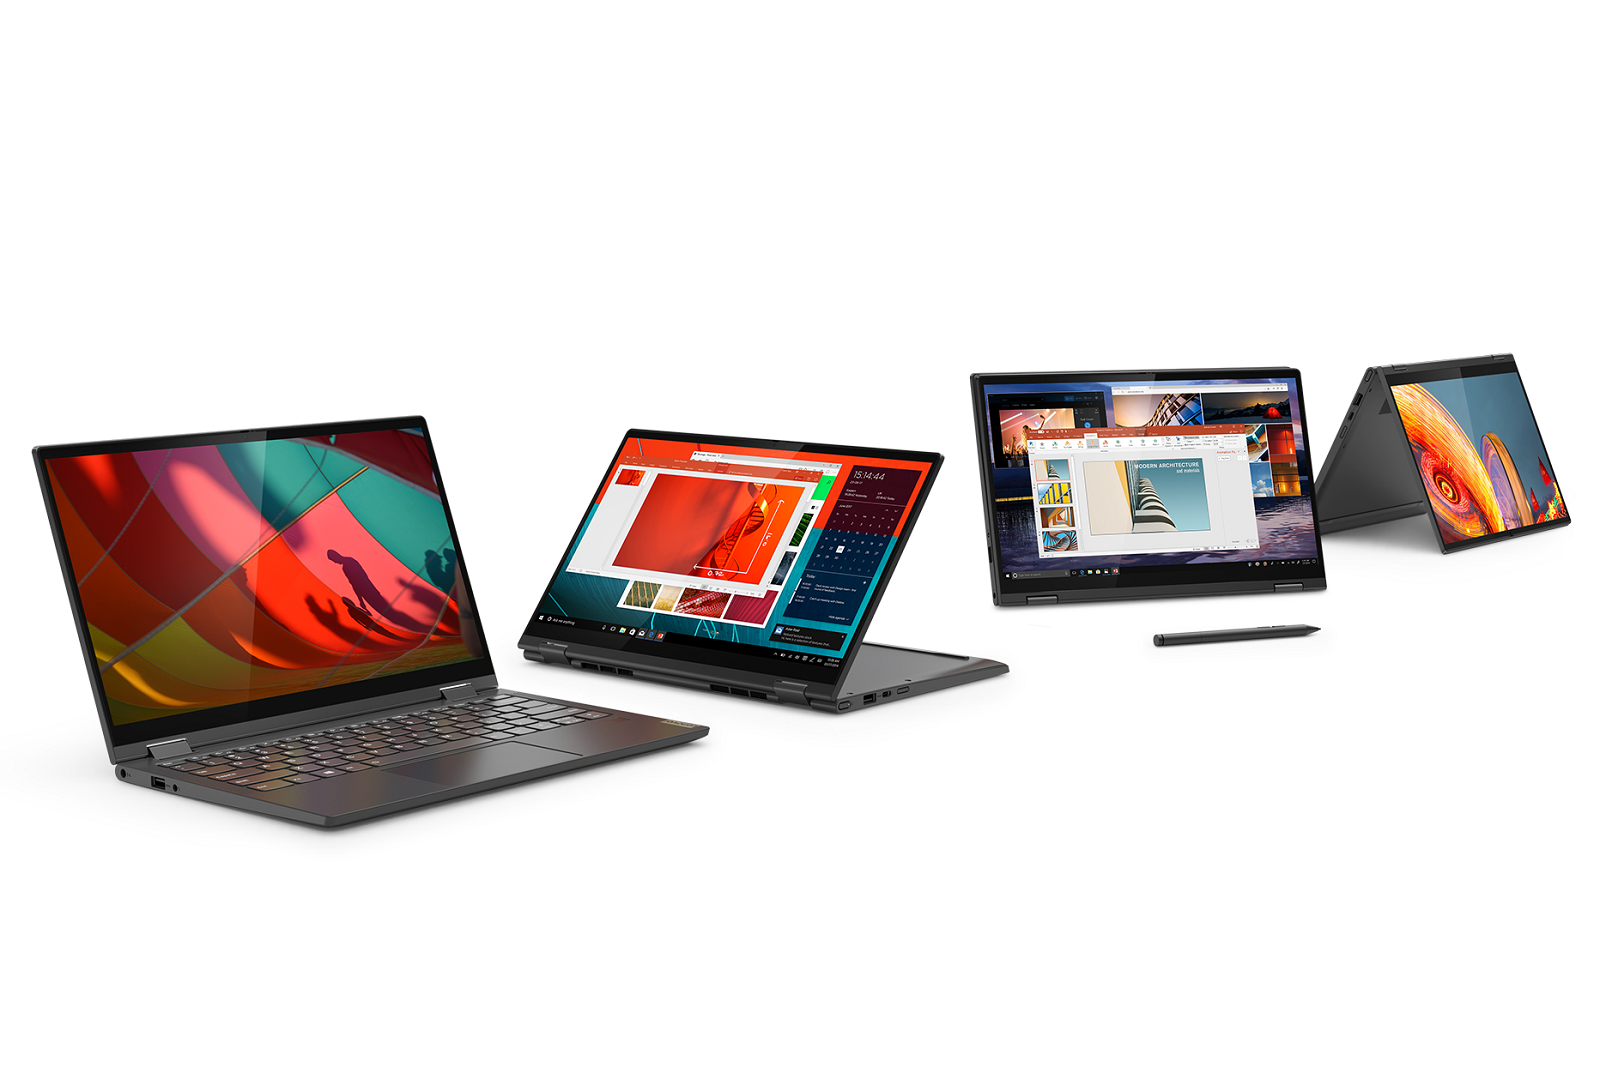 Lenovo Yoga laptops image 1